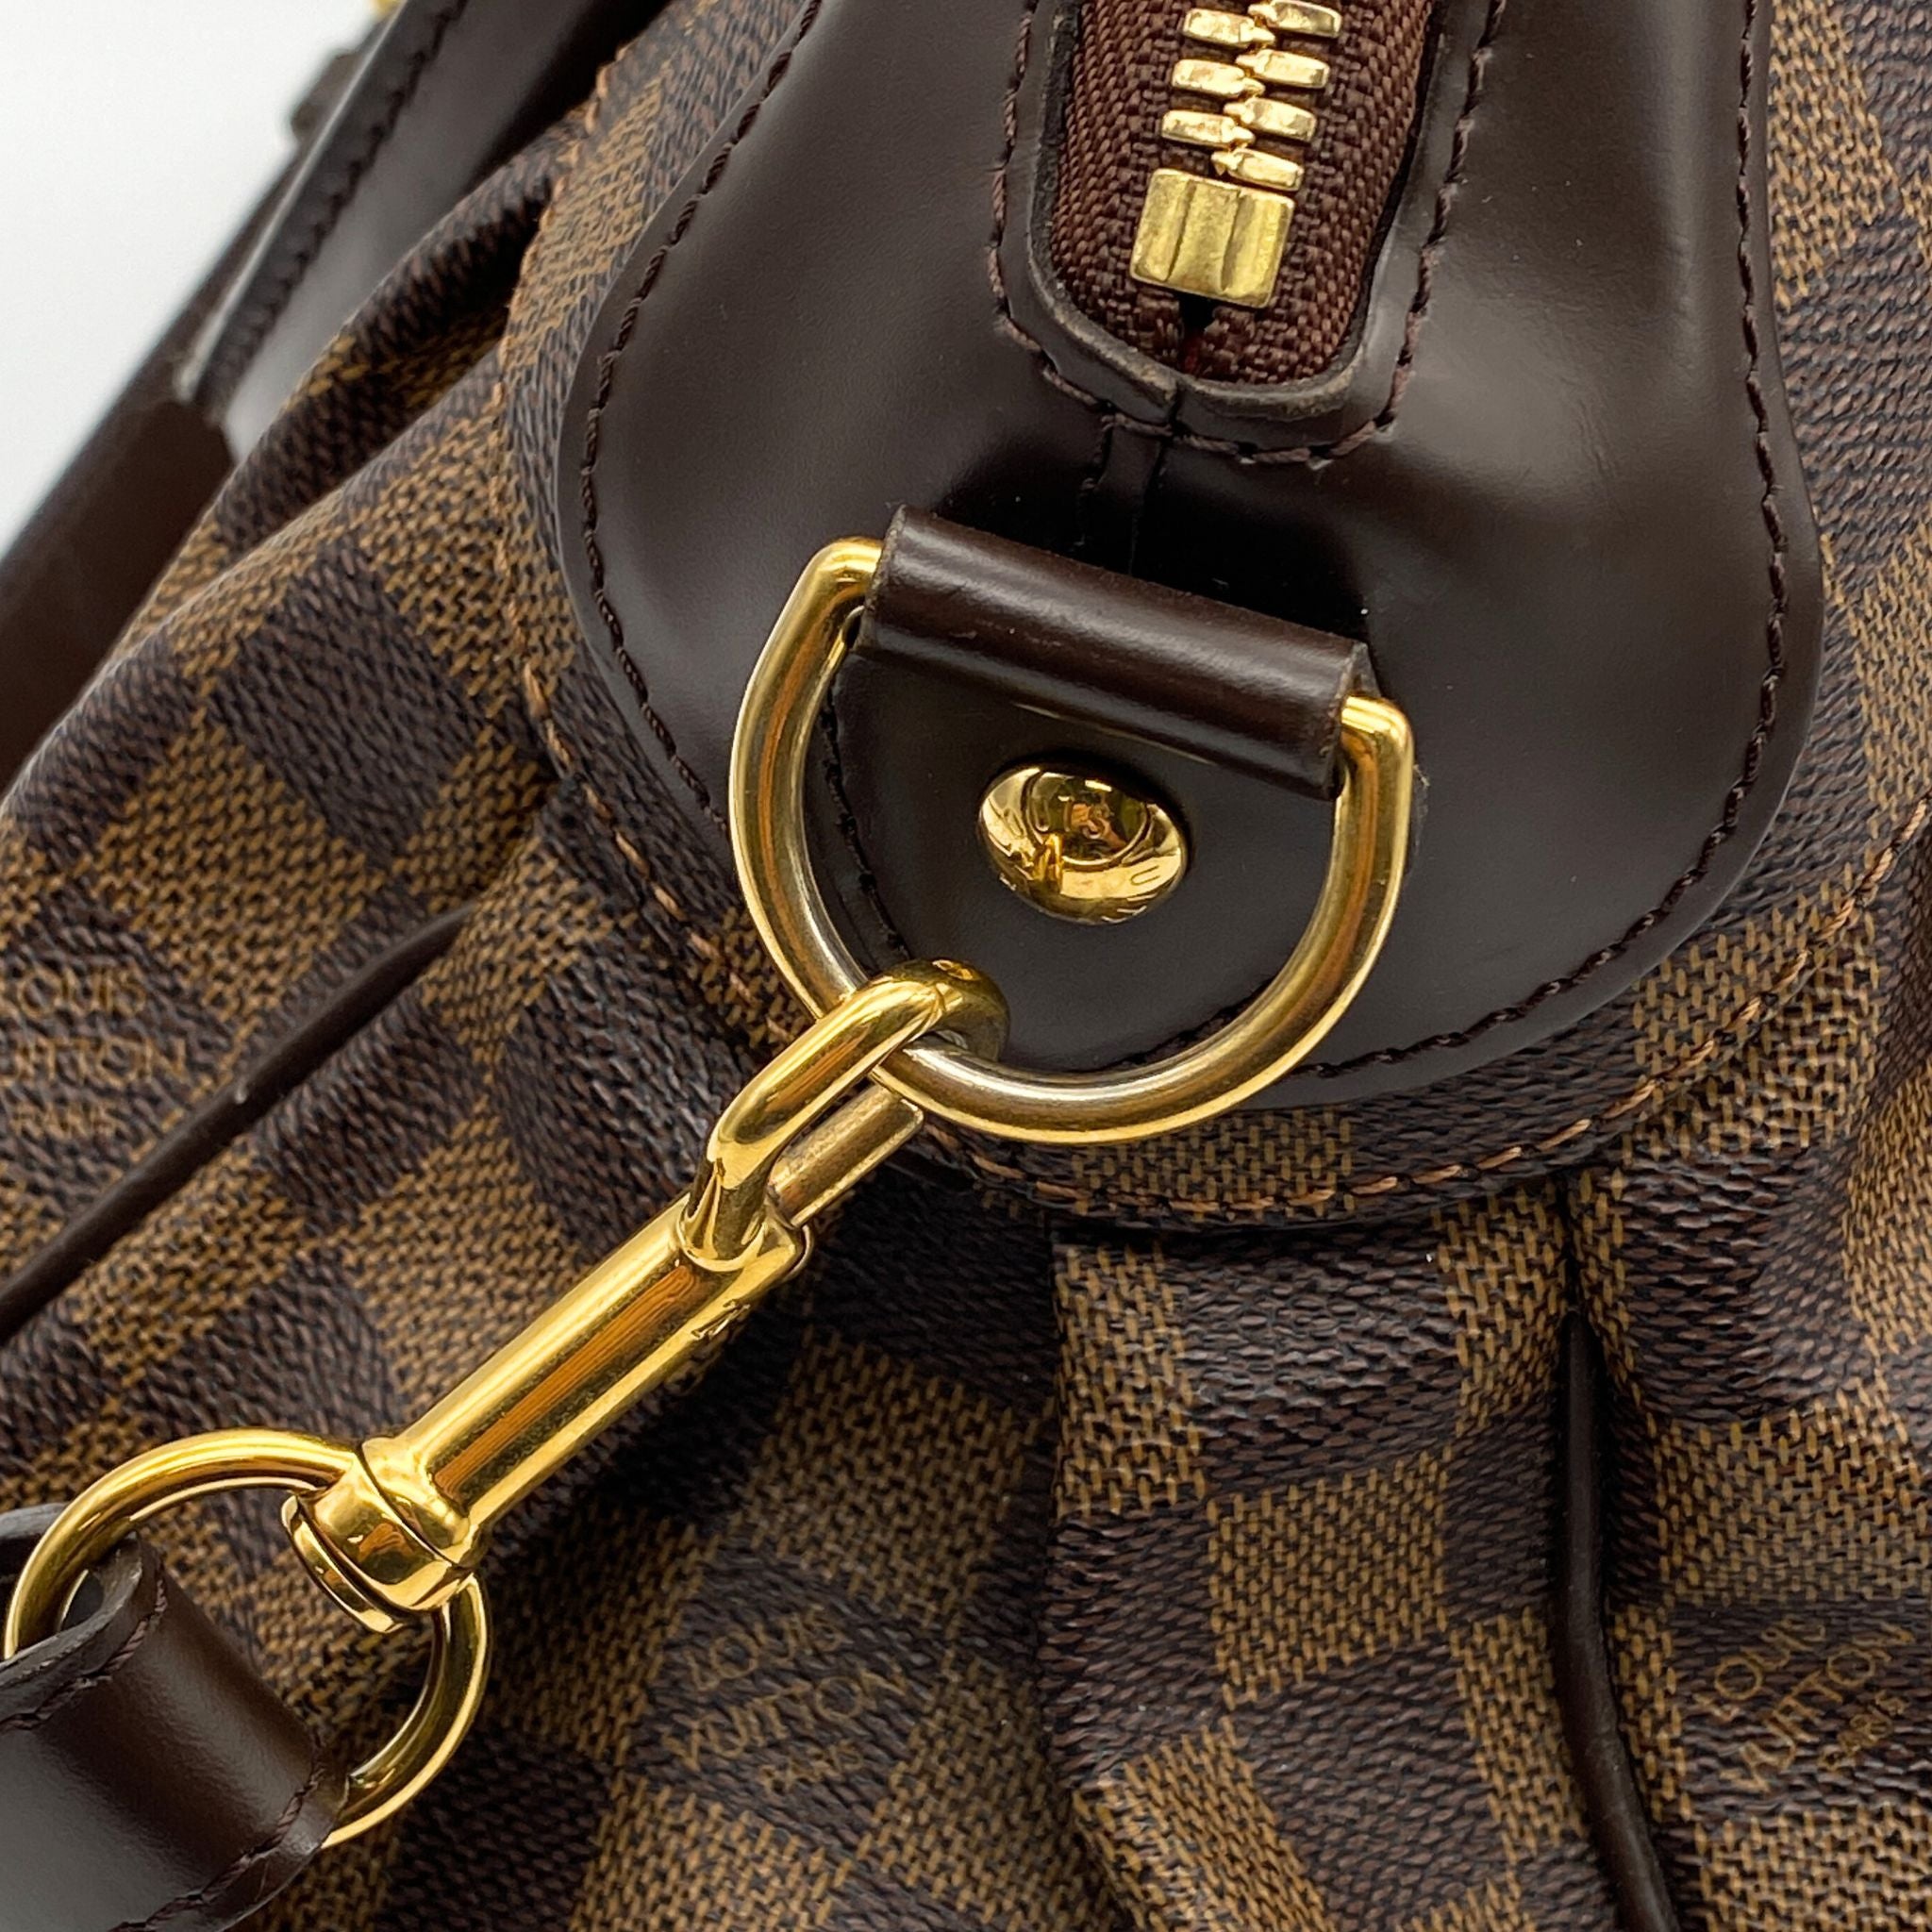 Louis Vuitton Trevi PM - ShopStyle Shoulder Bags